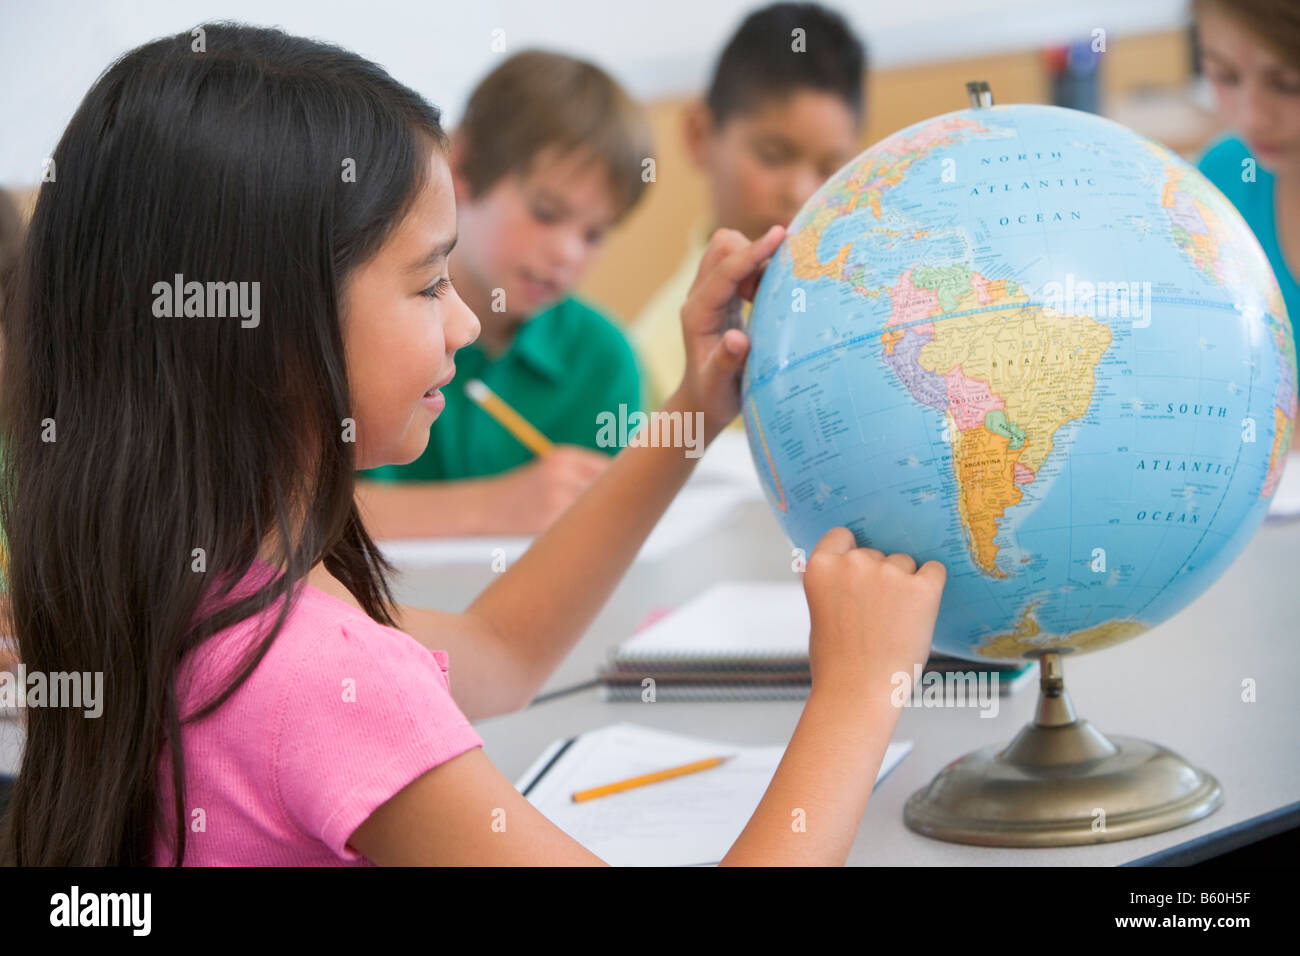 Student in class pointant sur un globe (selective focus) Banque D'Images